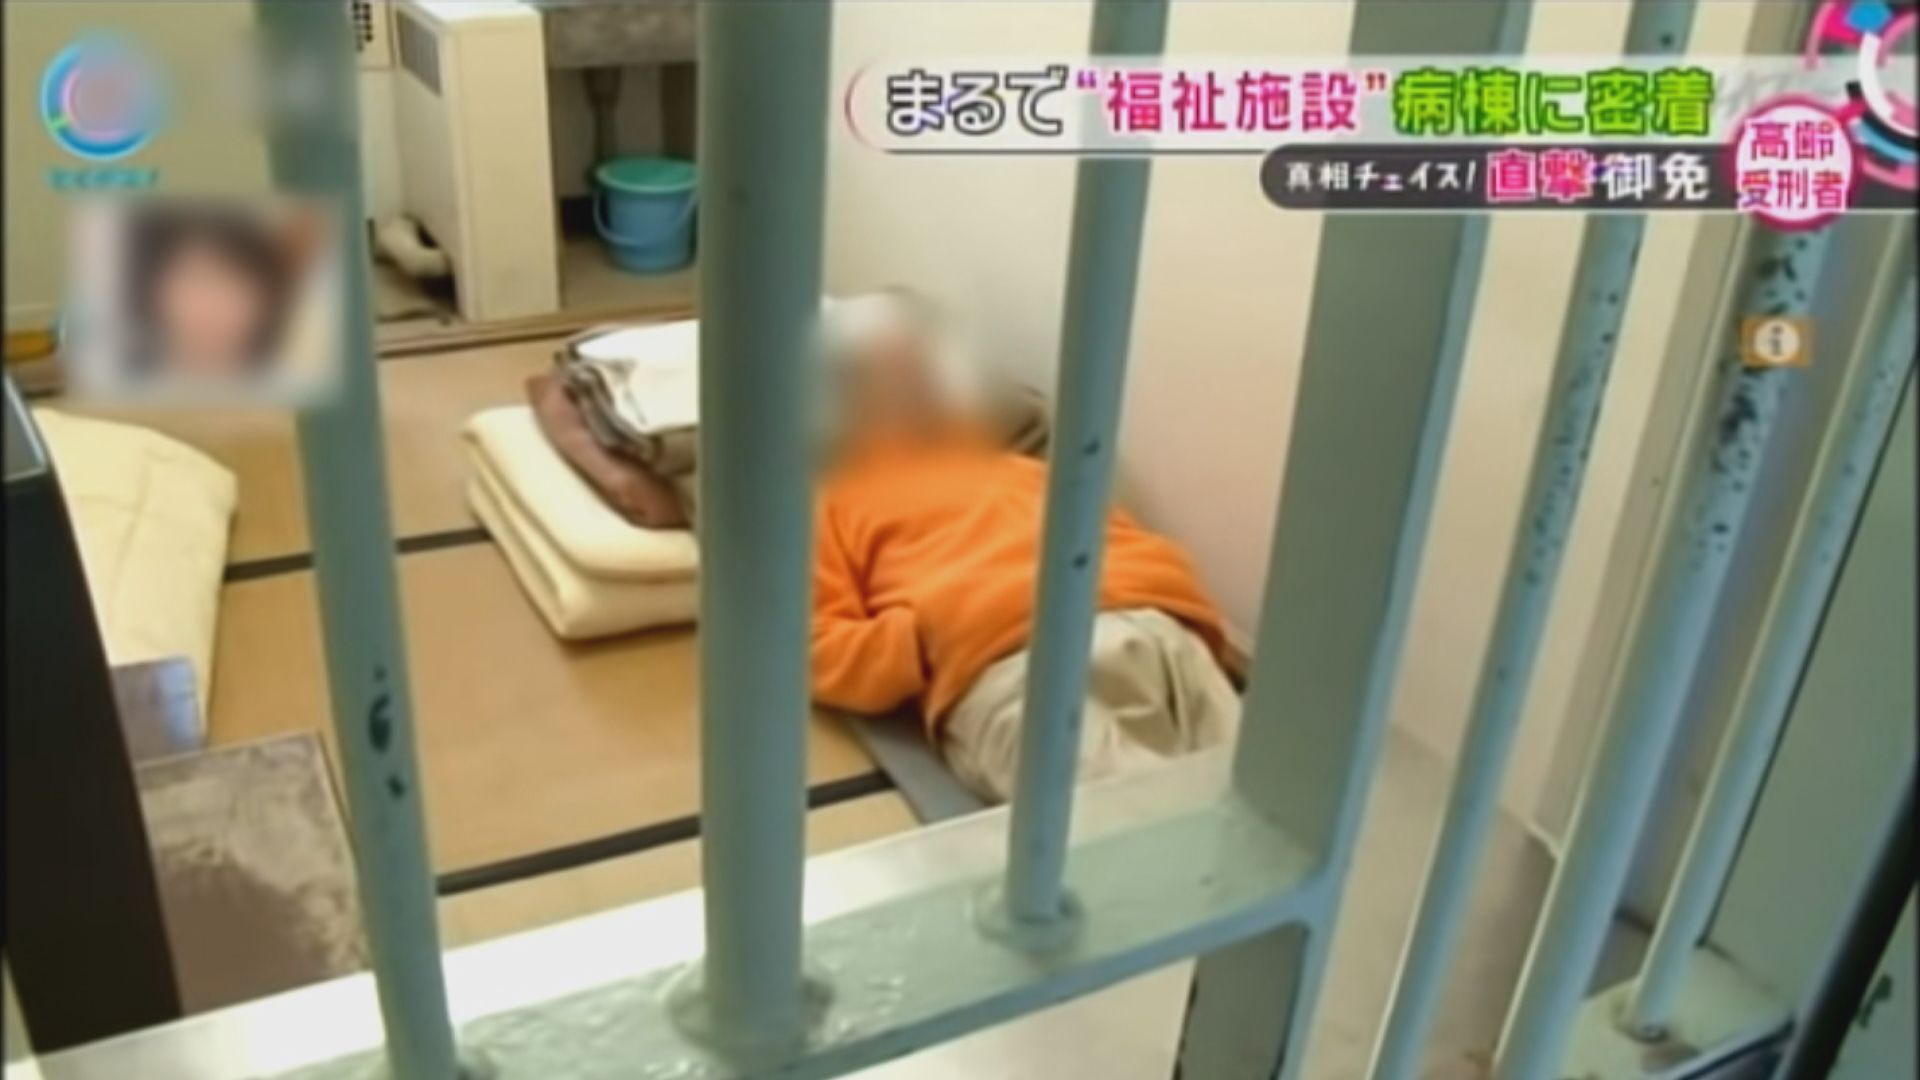 日本老人寧願犯罪坐監受國家供養